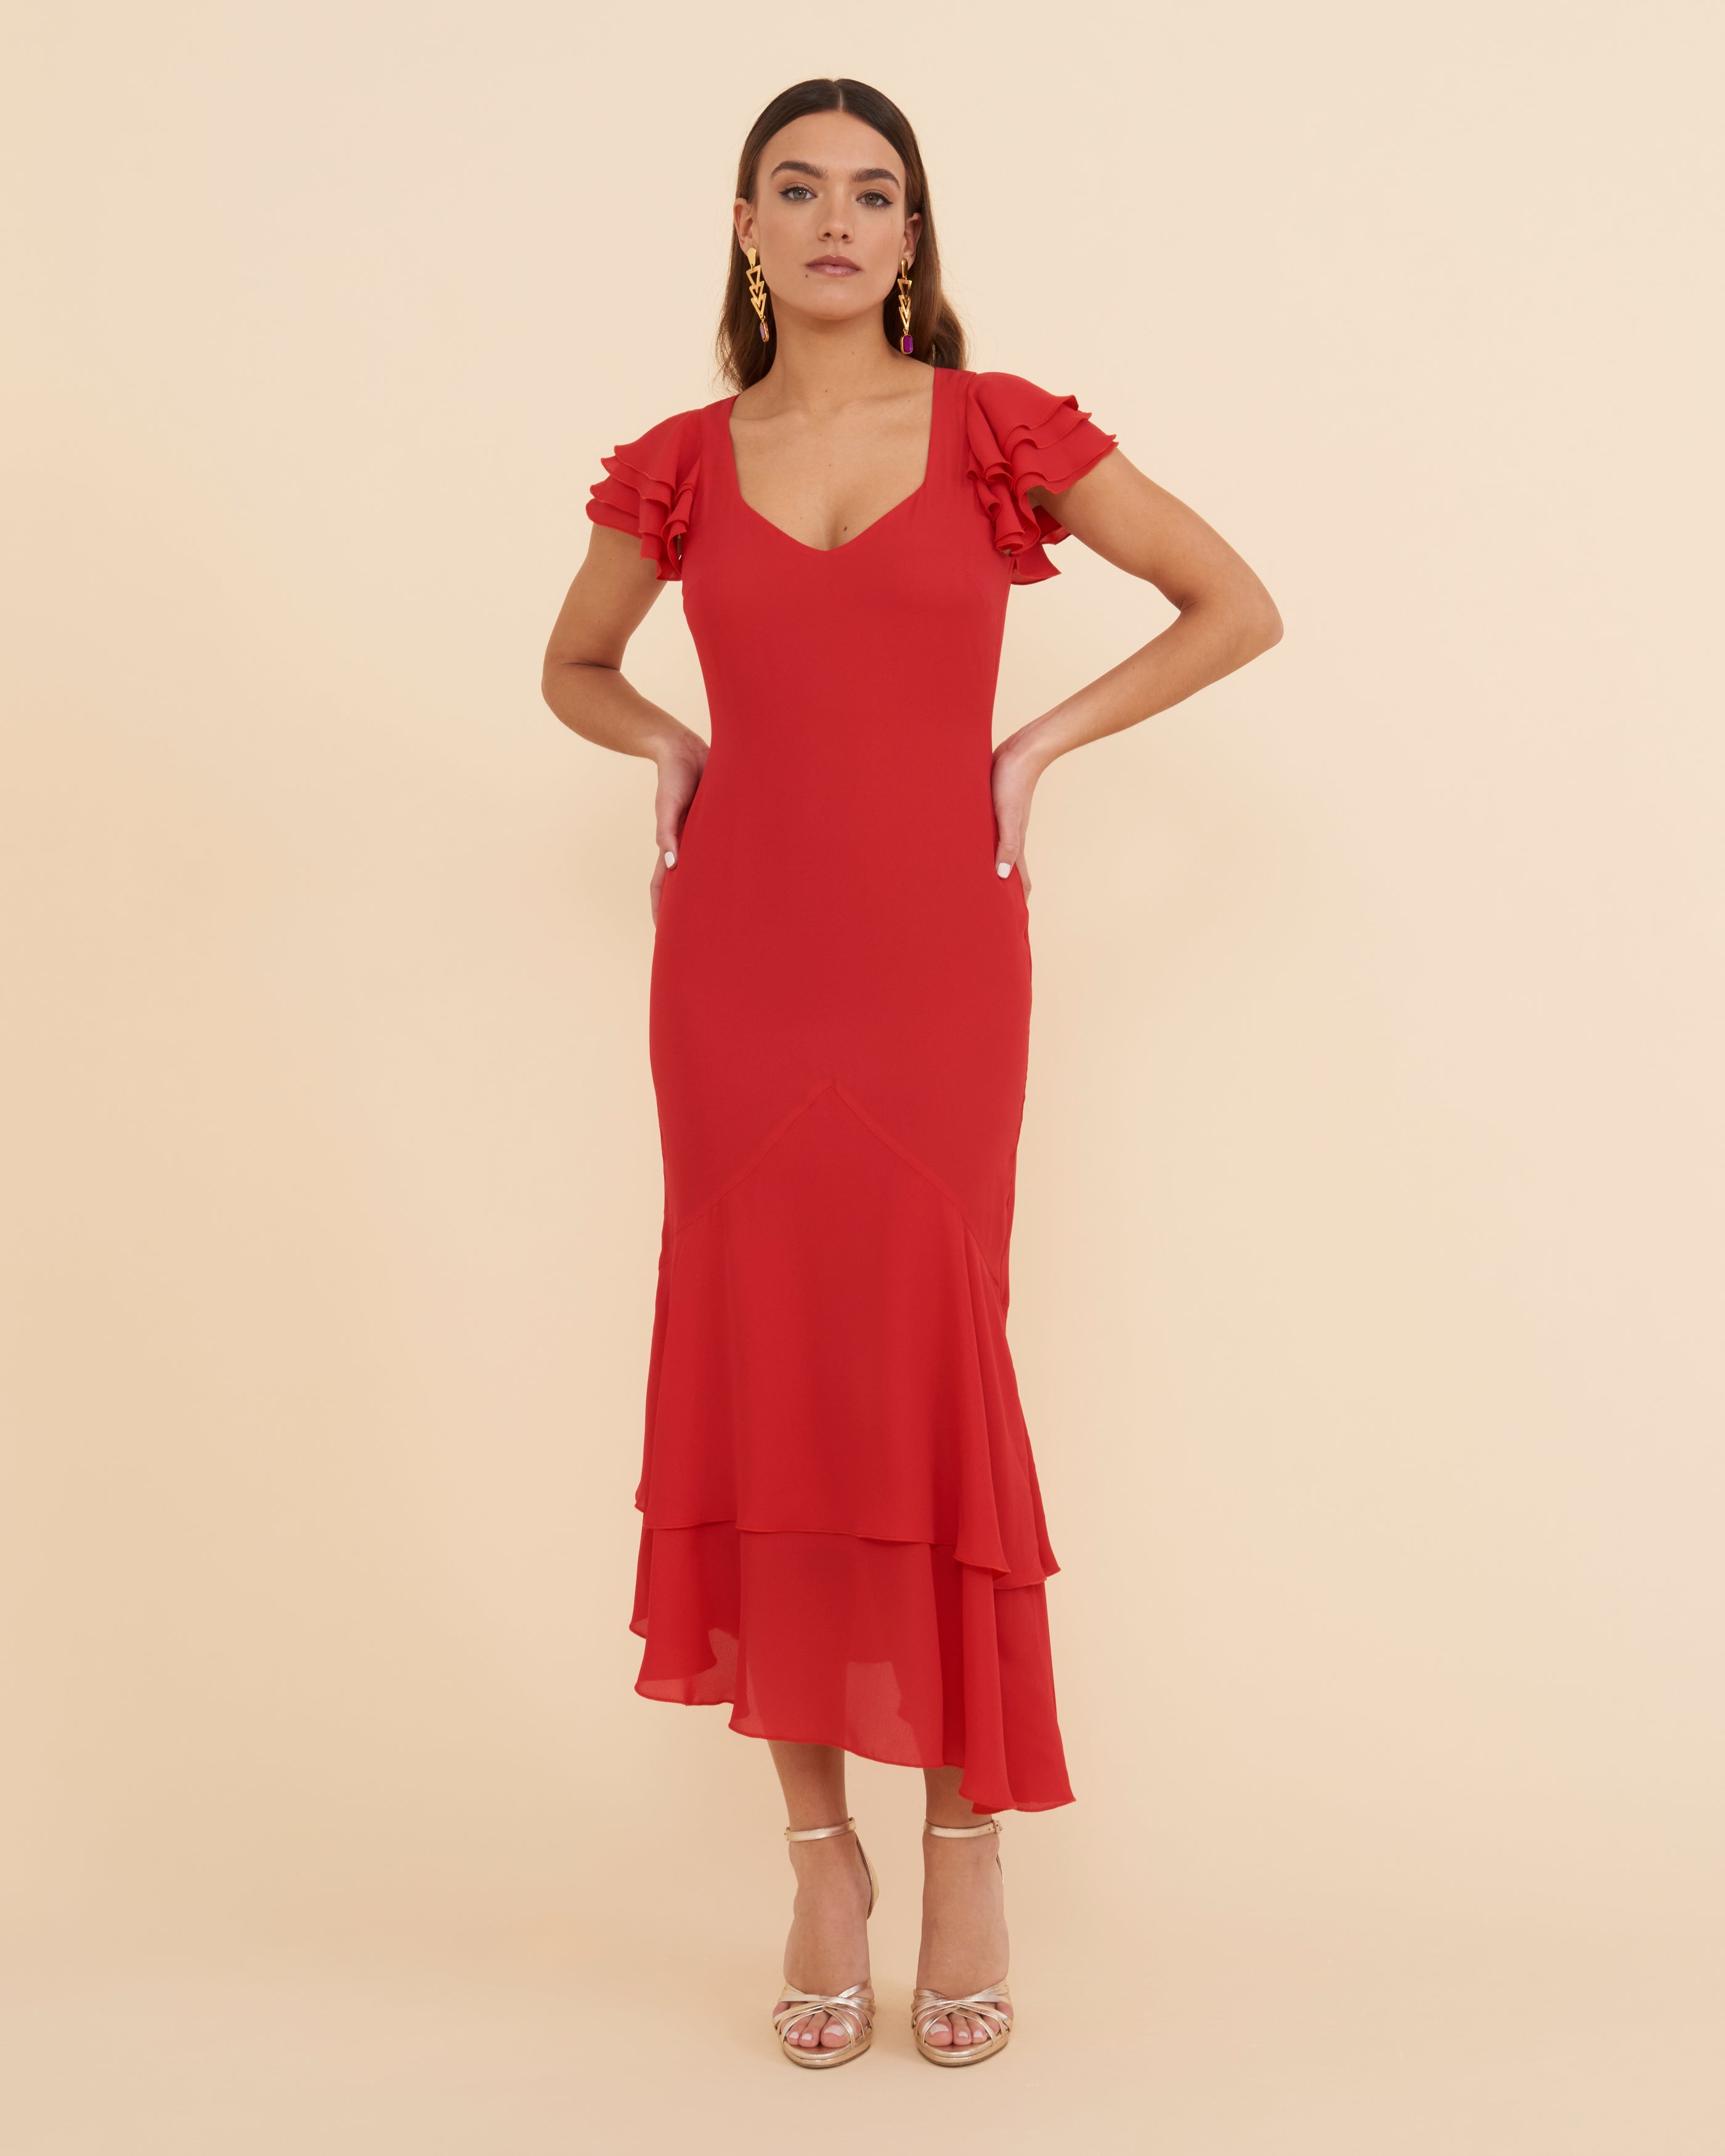 Zambra Red Dress